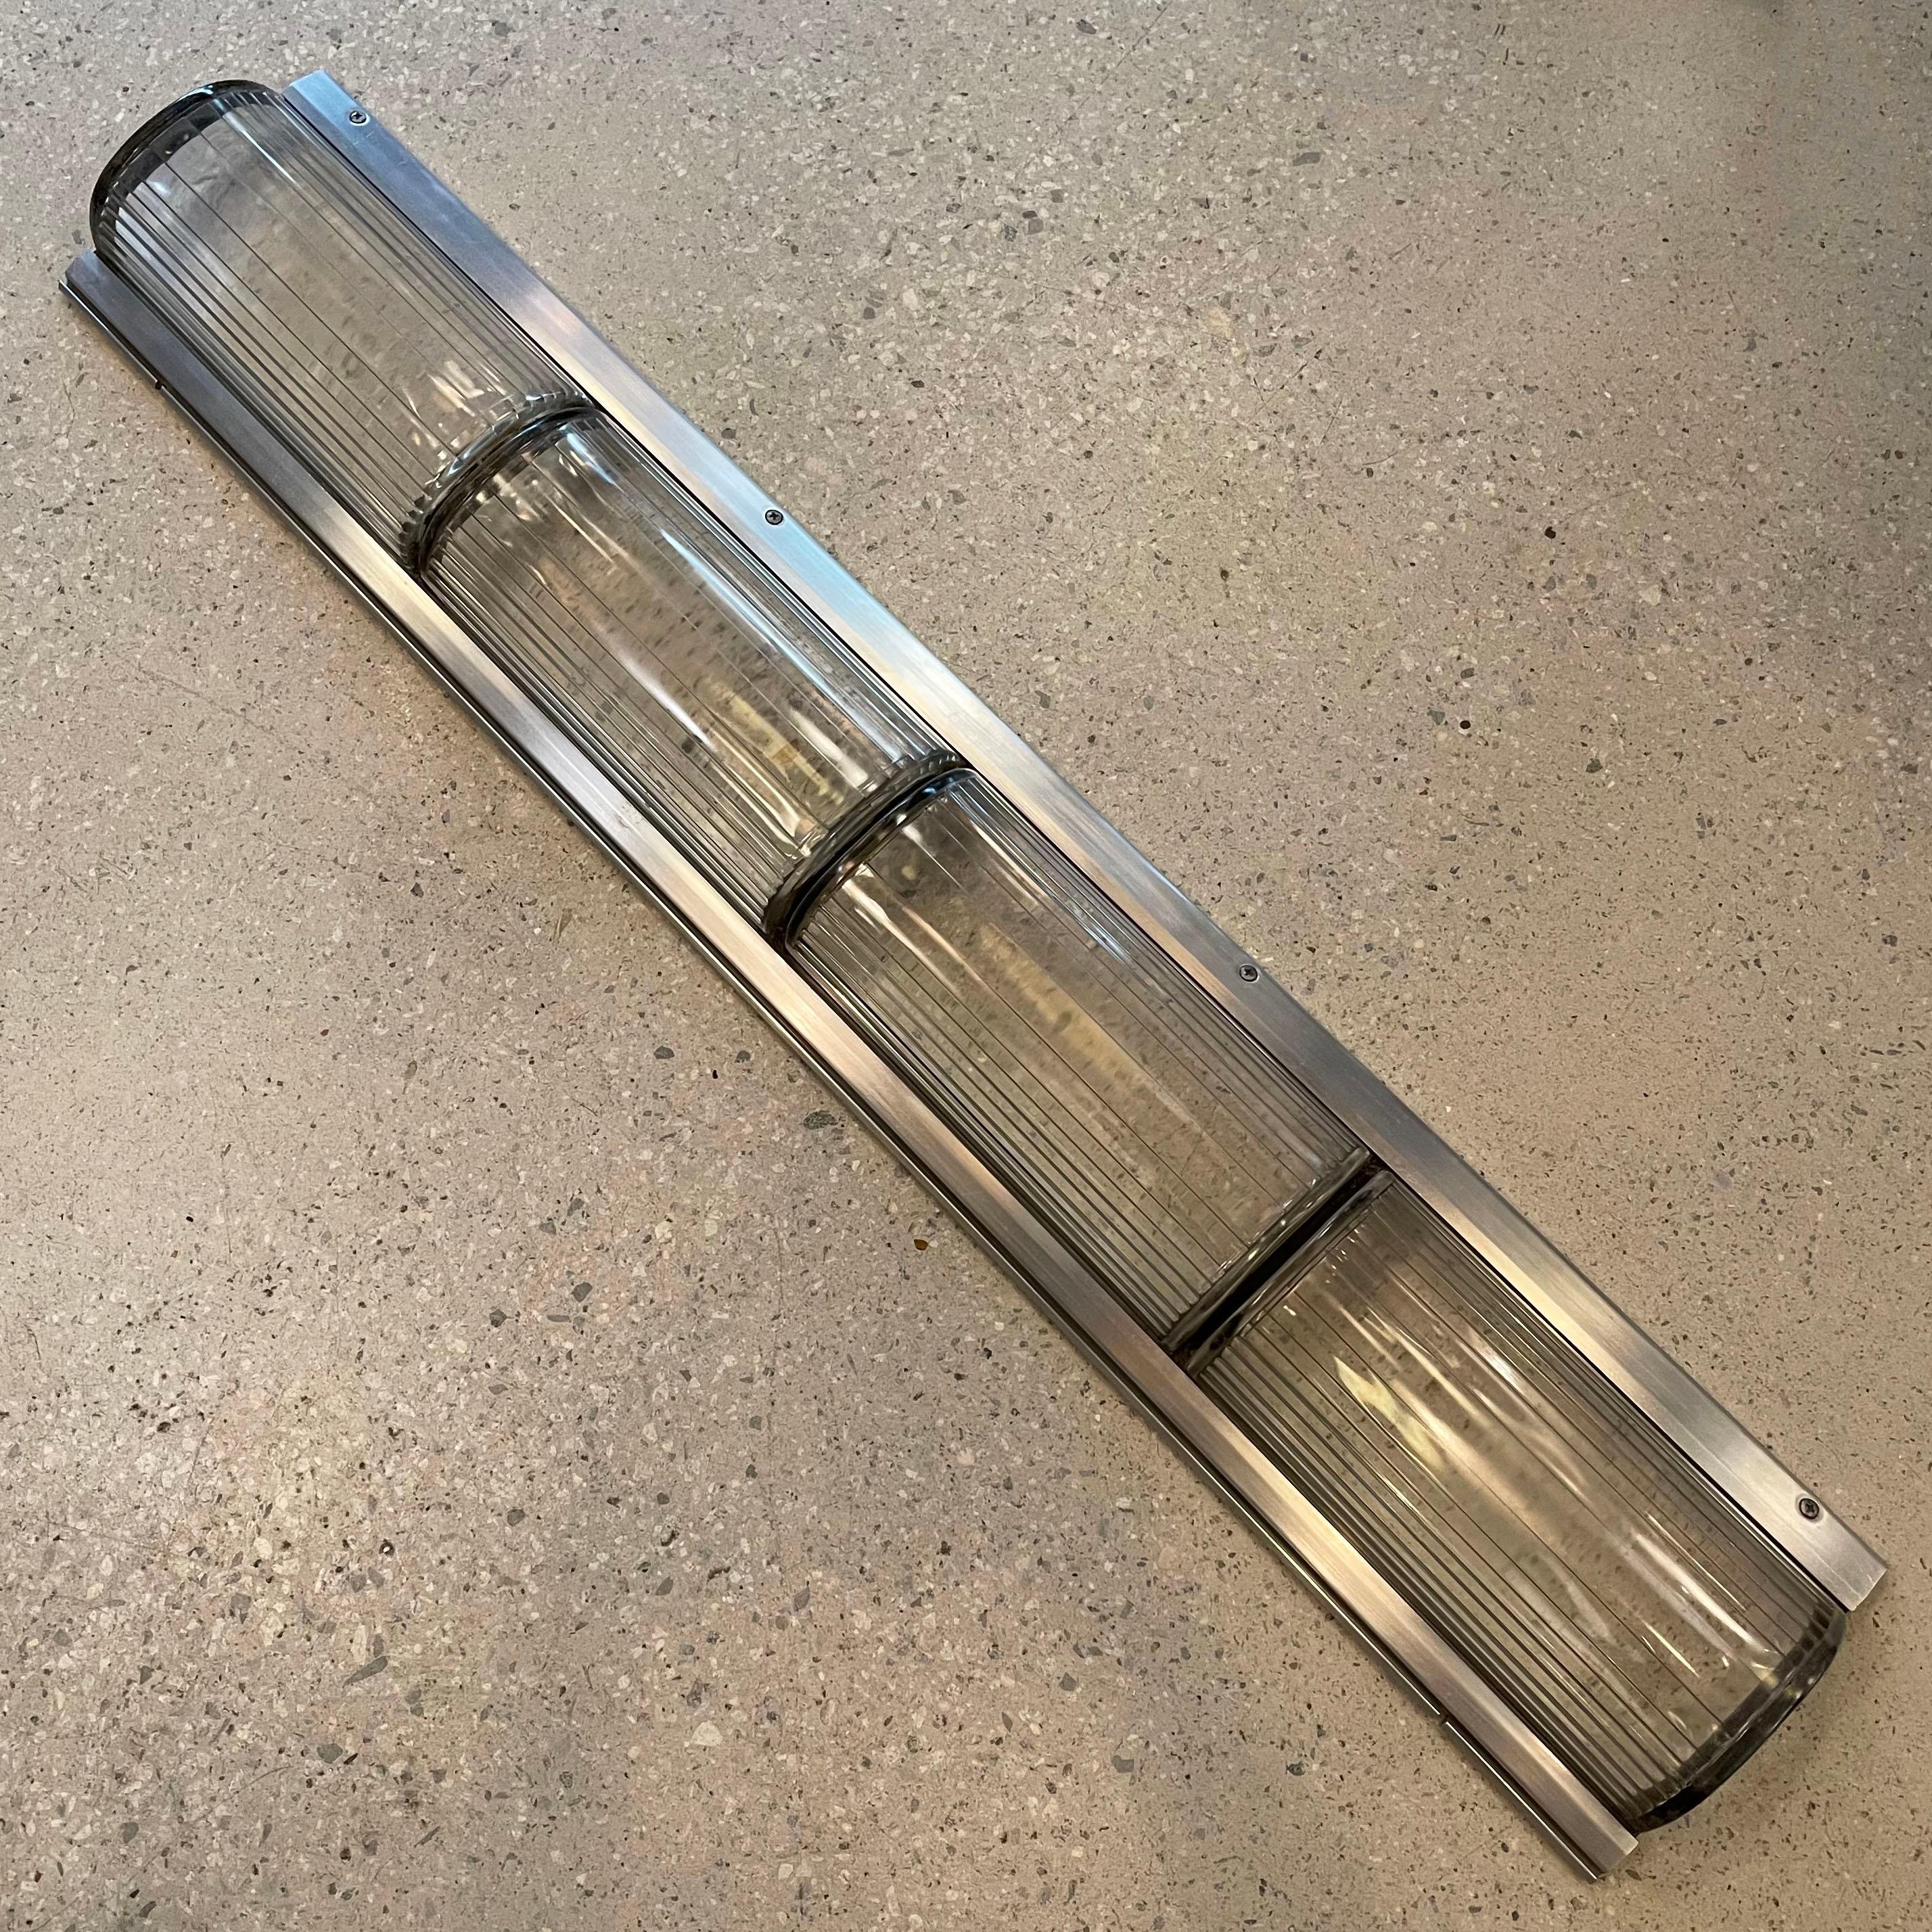 Die architektonisch anmutenden, im Art-Déco-Stil gehaltenen U-Bahn-Leuchten verfügen über einen Aluminium-Rohrrahmen mit gerippten, diffusen Pyrex-Glasschirmen, die durch ein schwarzes Gummiband in 4 Abschnitte von einem Fuß unterteilt sind. Die